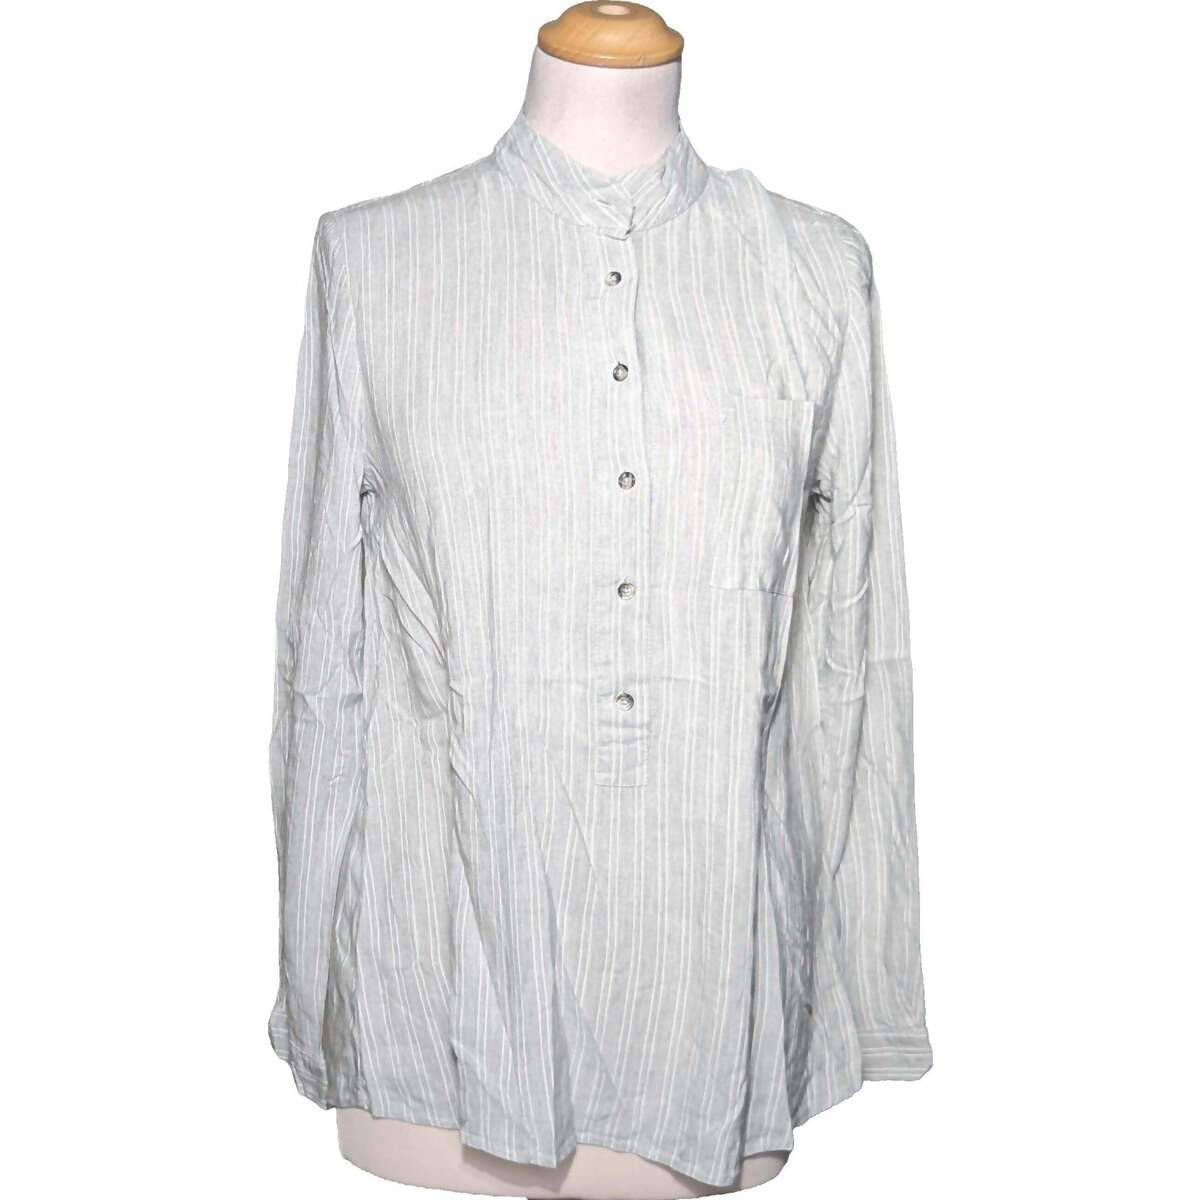 Vêtements Femme Tops / Blouses Caroll blouse  40 - T3 - L Gris Gris